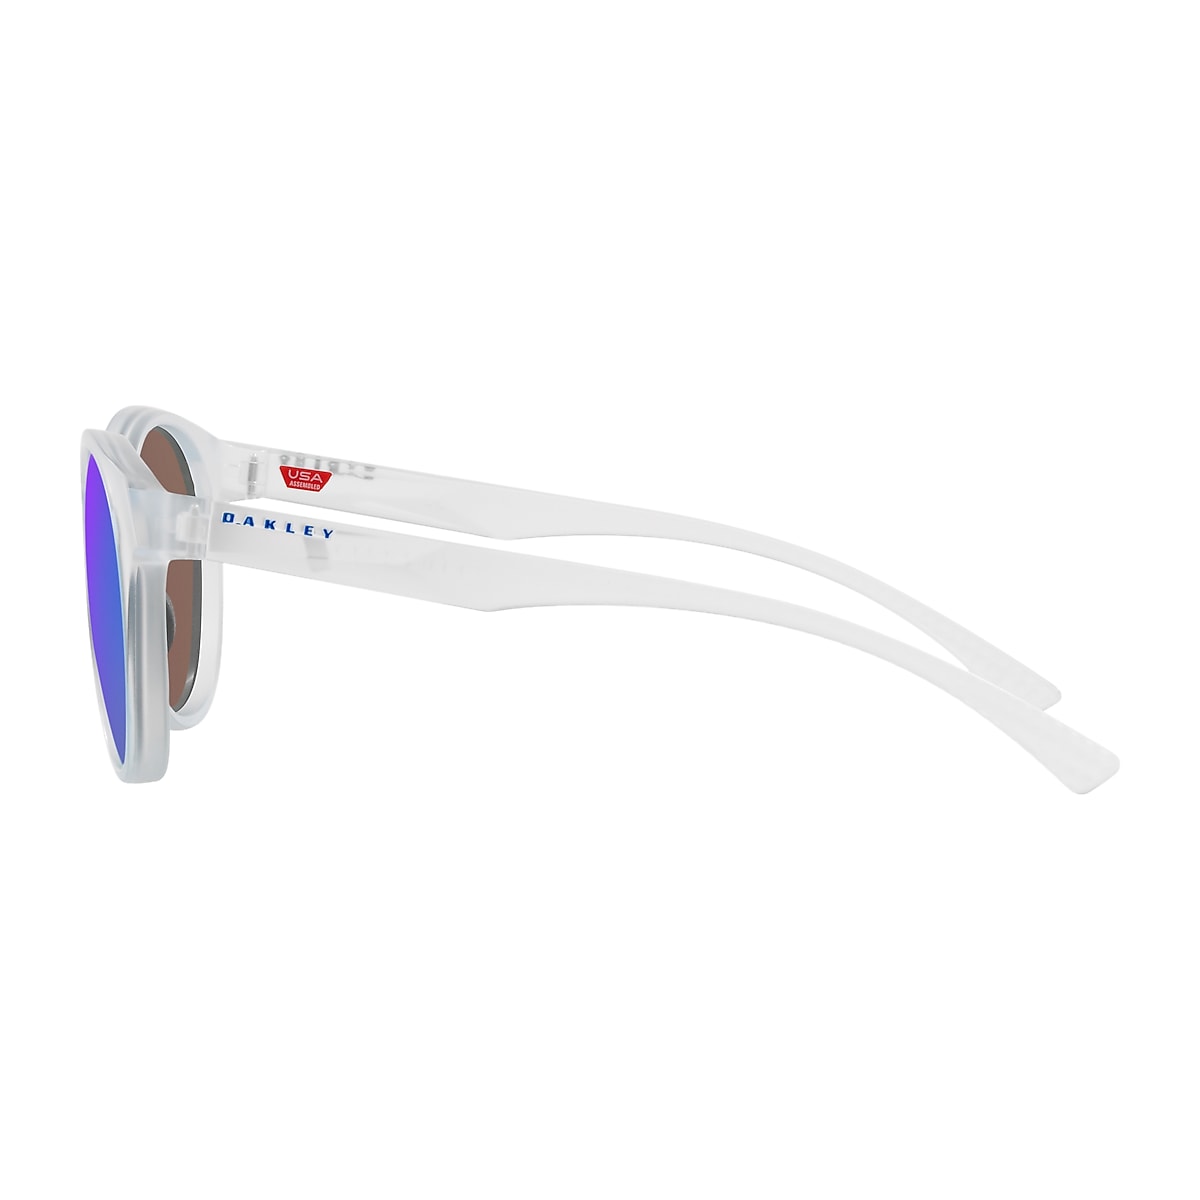 Spindrift Prizm Sapphire Lenses, Matte Clear Frame Sunglasses 